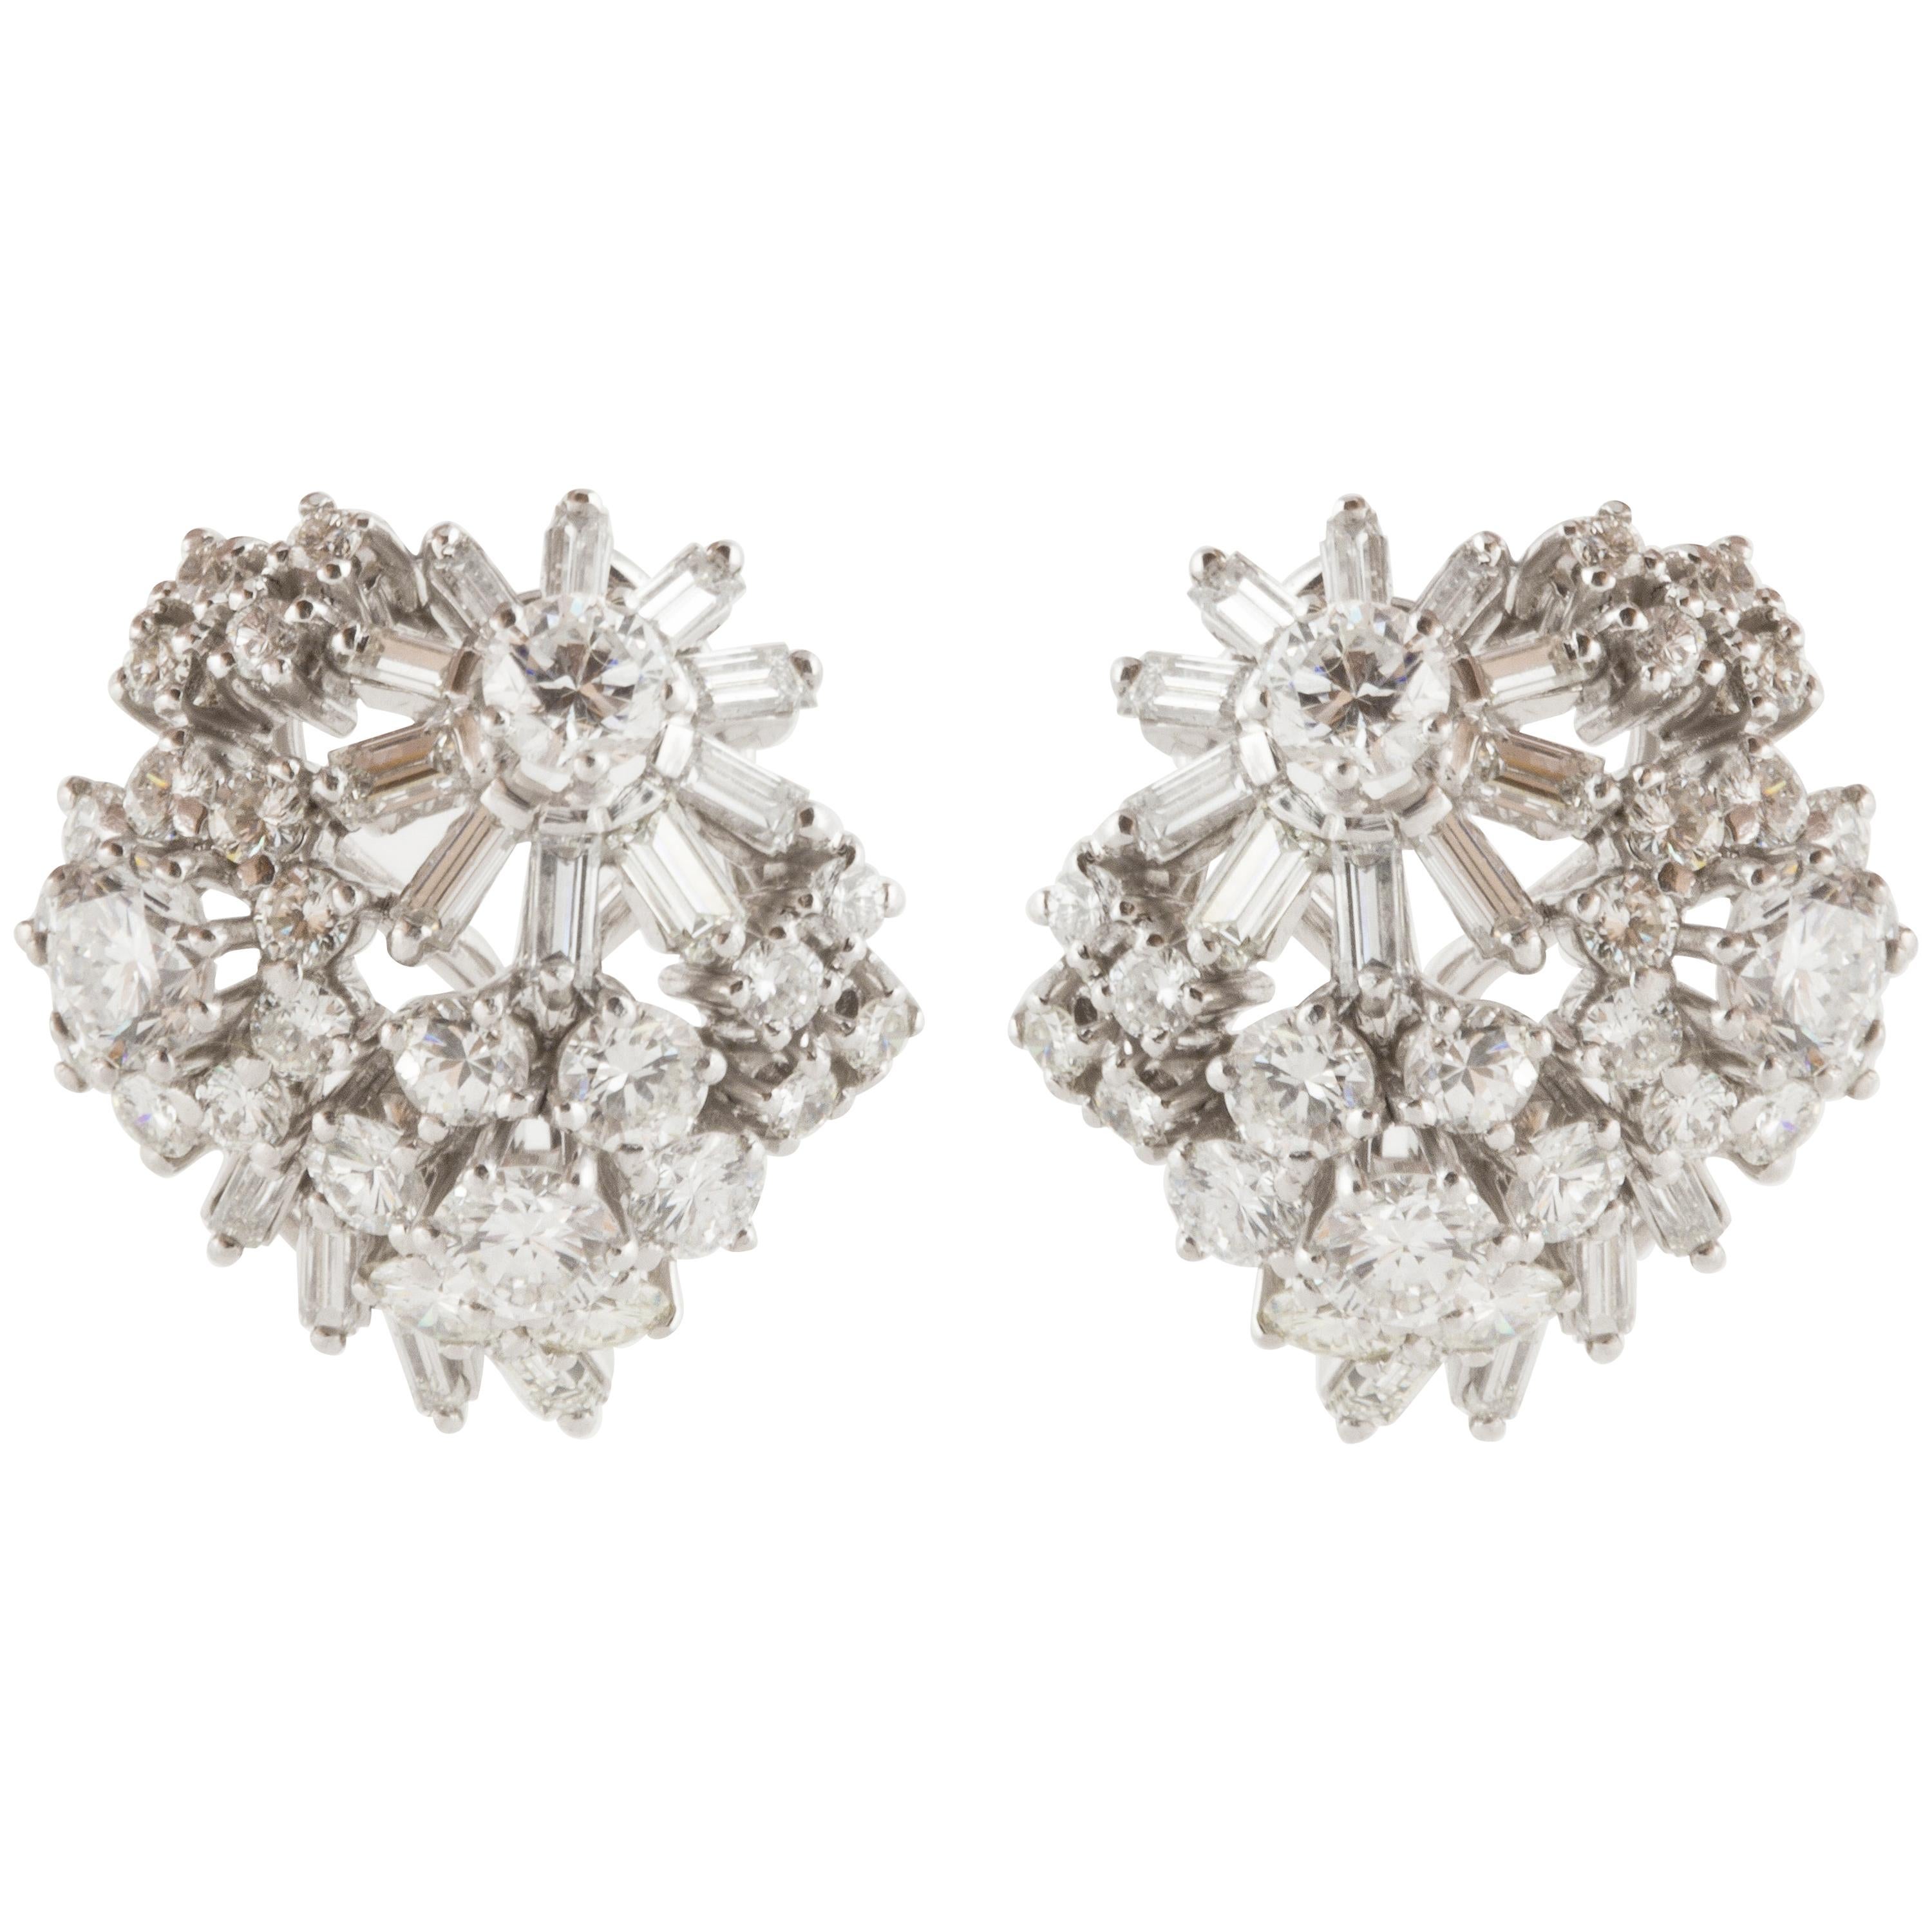 1950s Platinum Diamond Cluster Earrings For Sale